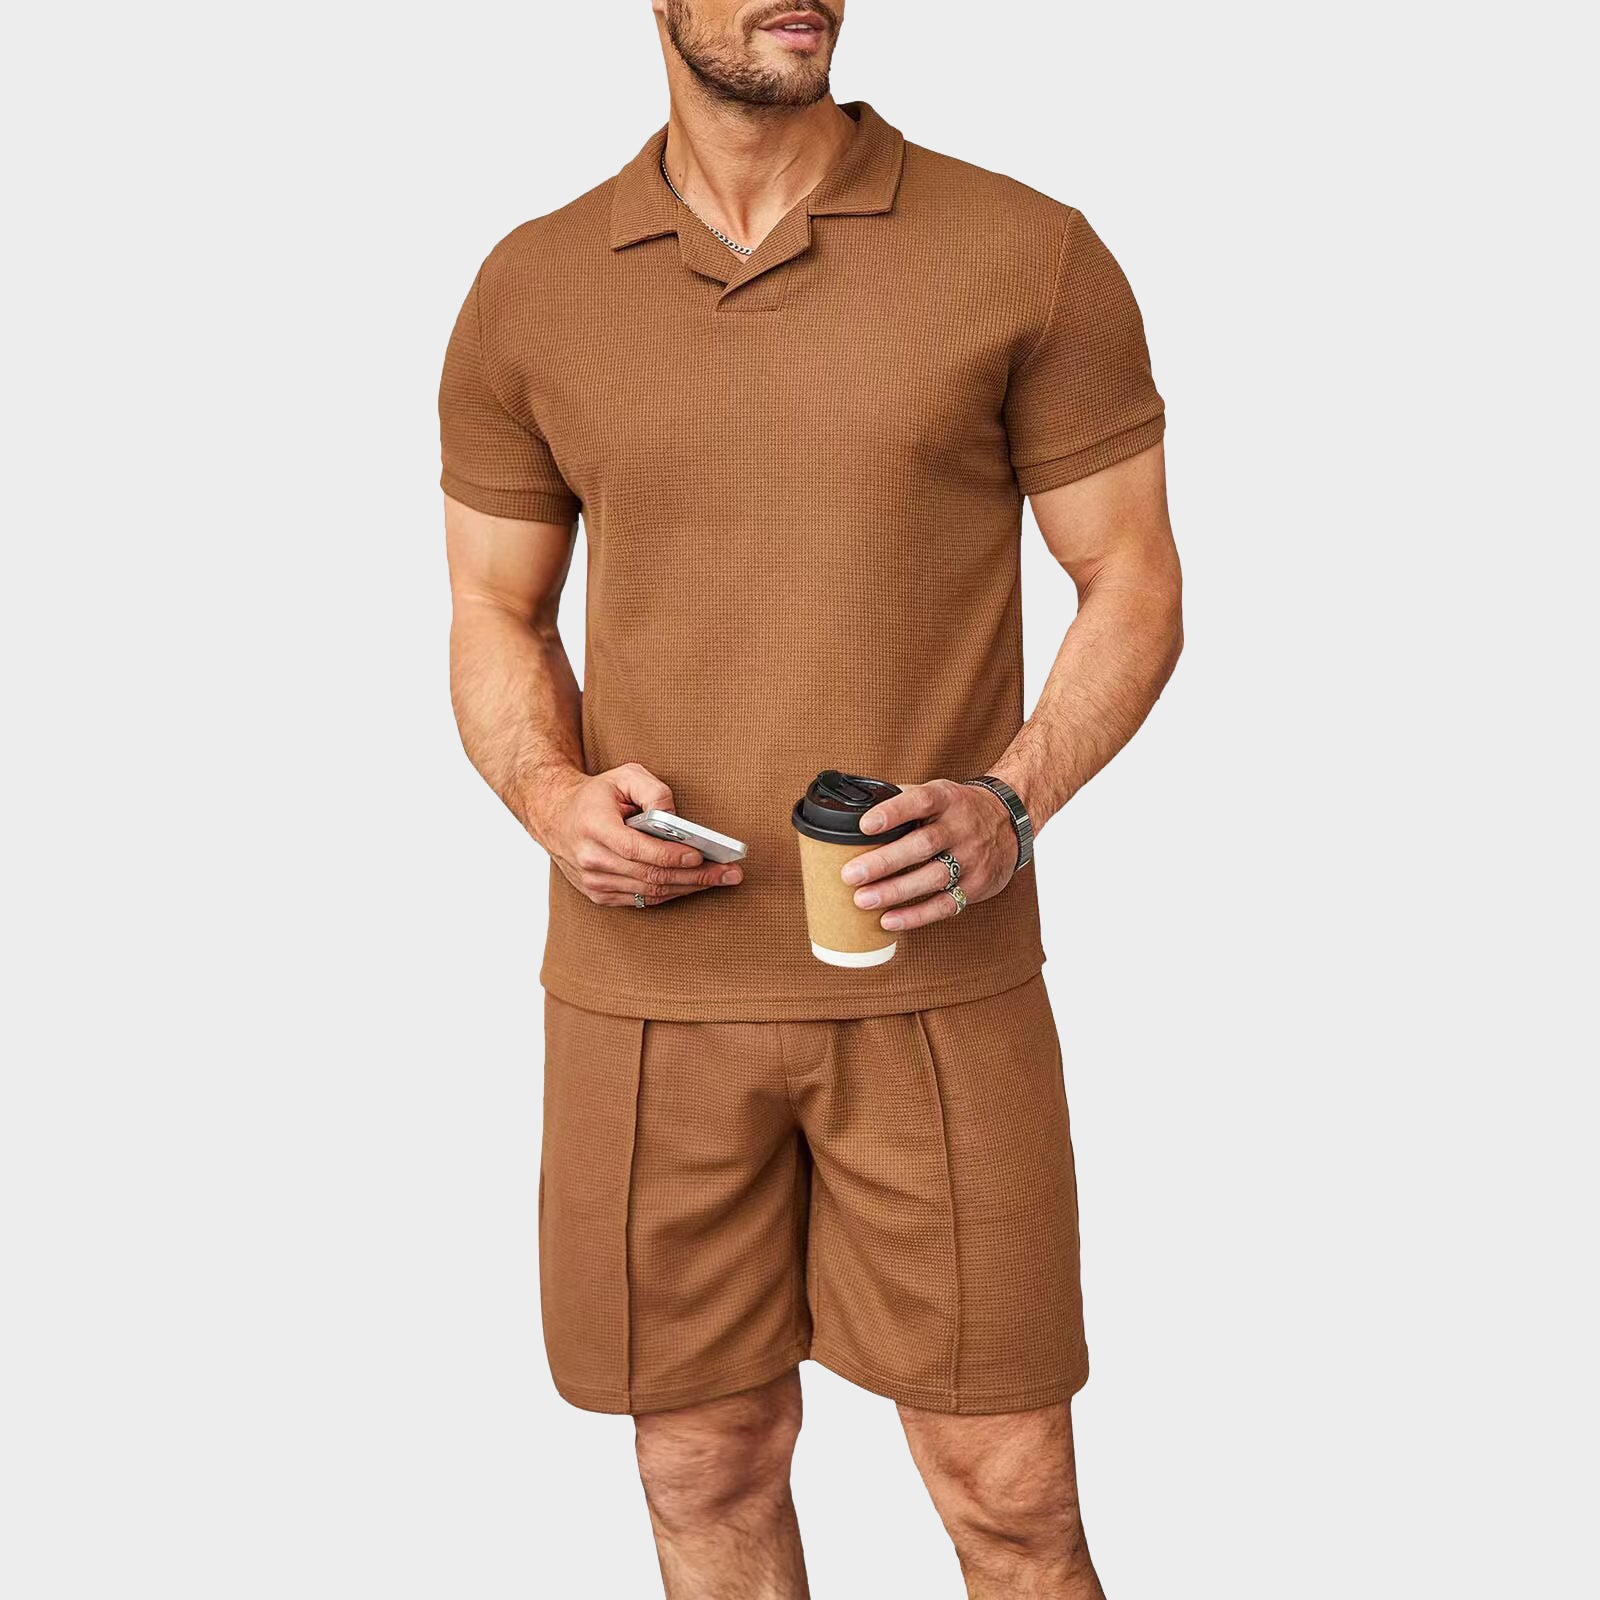 Brenner Shirt and Shorts Set